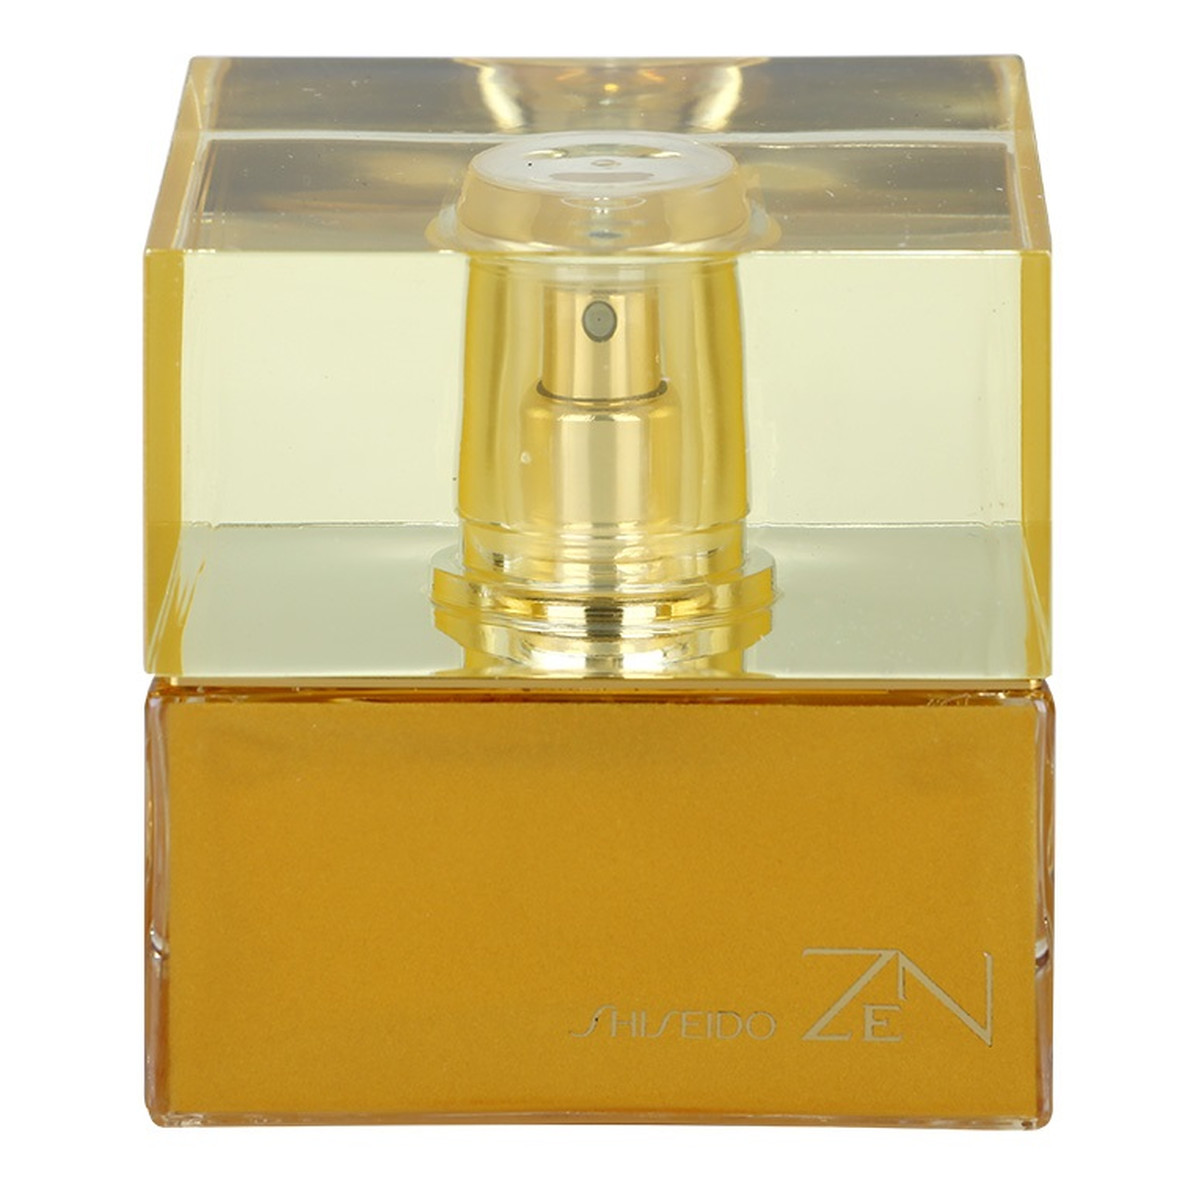 Shiseido Zen woda perfumowana dla kobiet 50ml